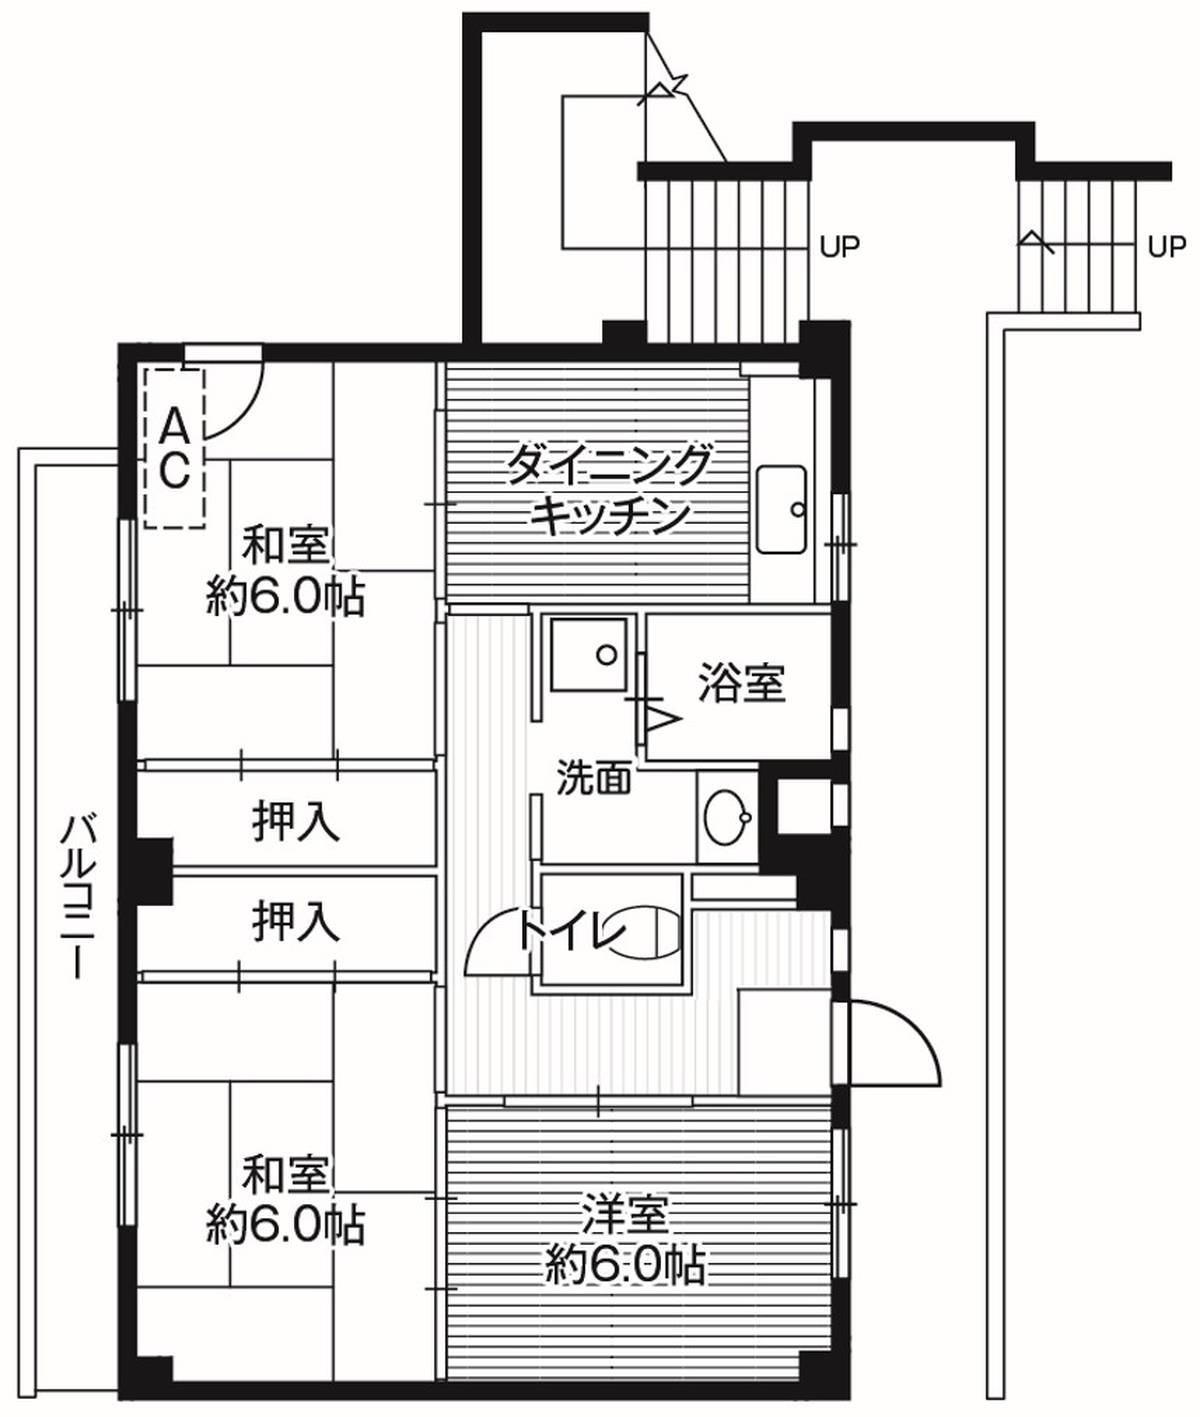 Sơ đồ phòng 3DK của Village House Hitachi ở Hitachi-shi